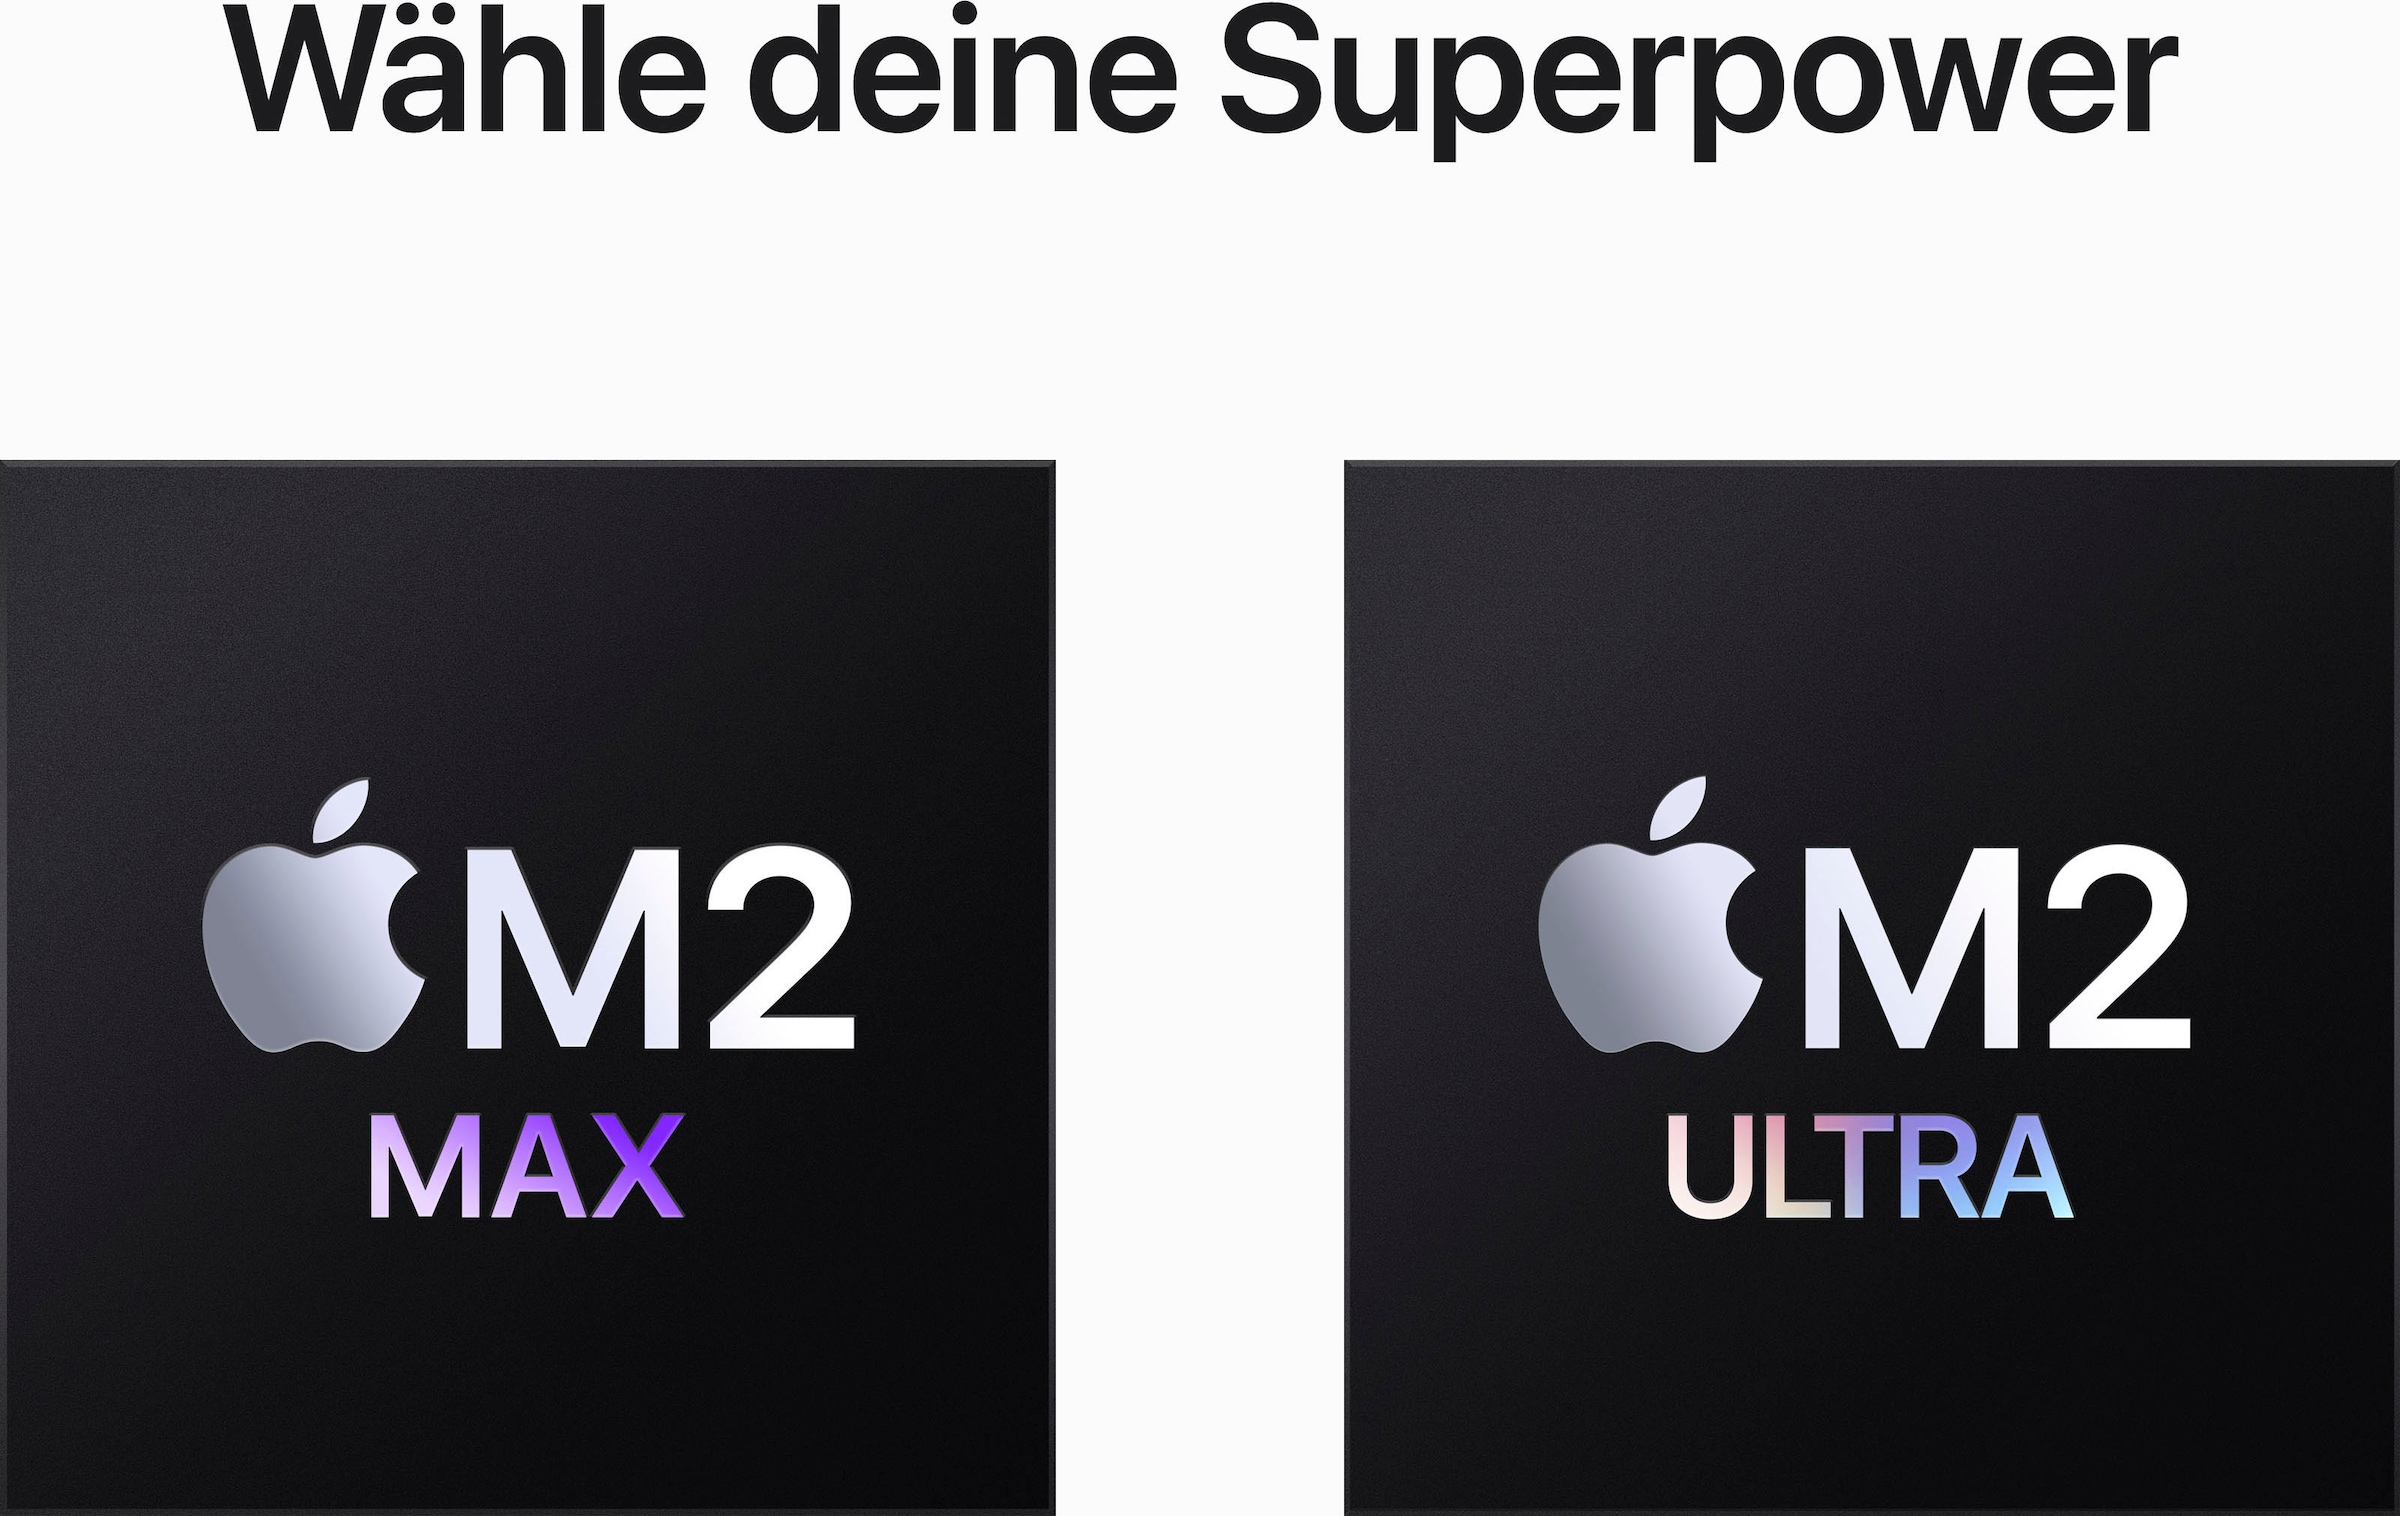 Apple Mac Studio »Mac Studio Z17Z M2 Max«